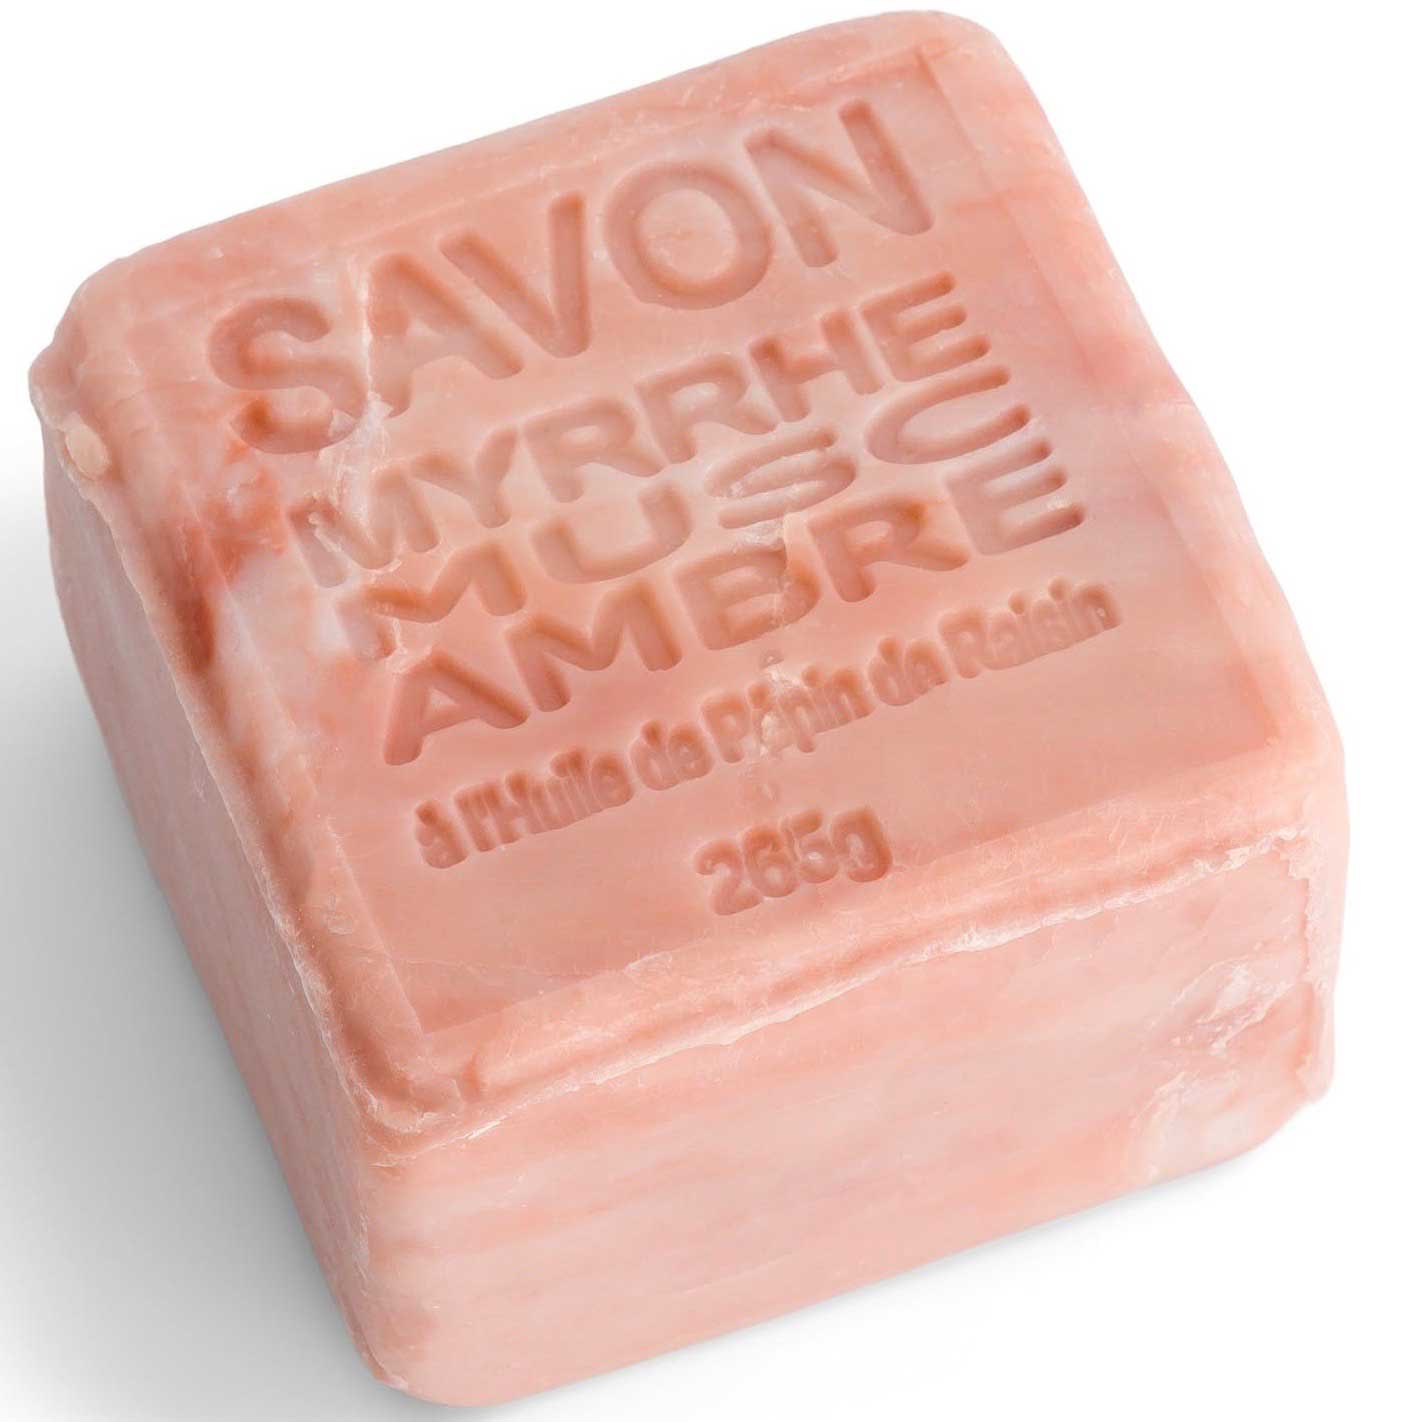 Savon cube Musc, Myrrhe, Ambre - von Maitre Savonitto